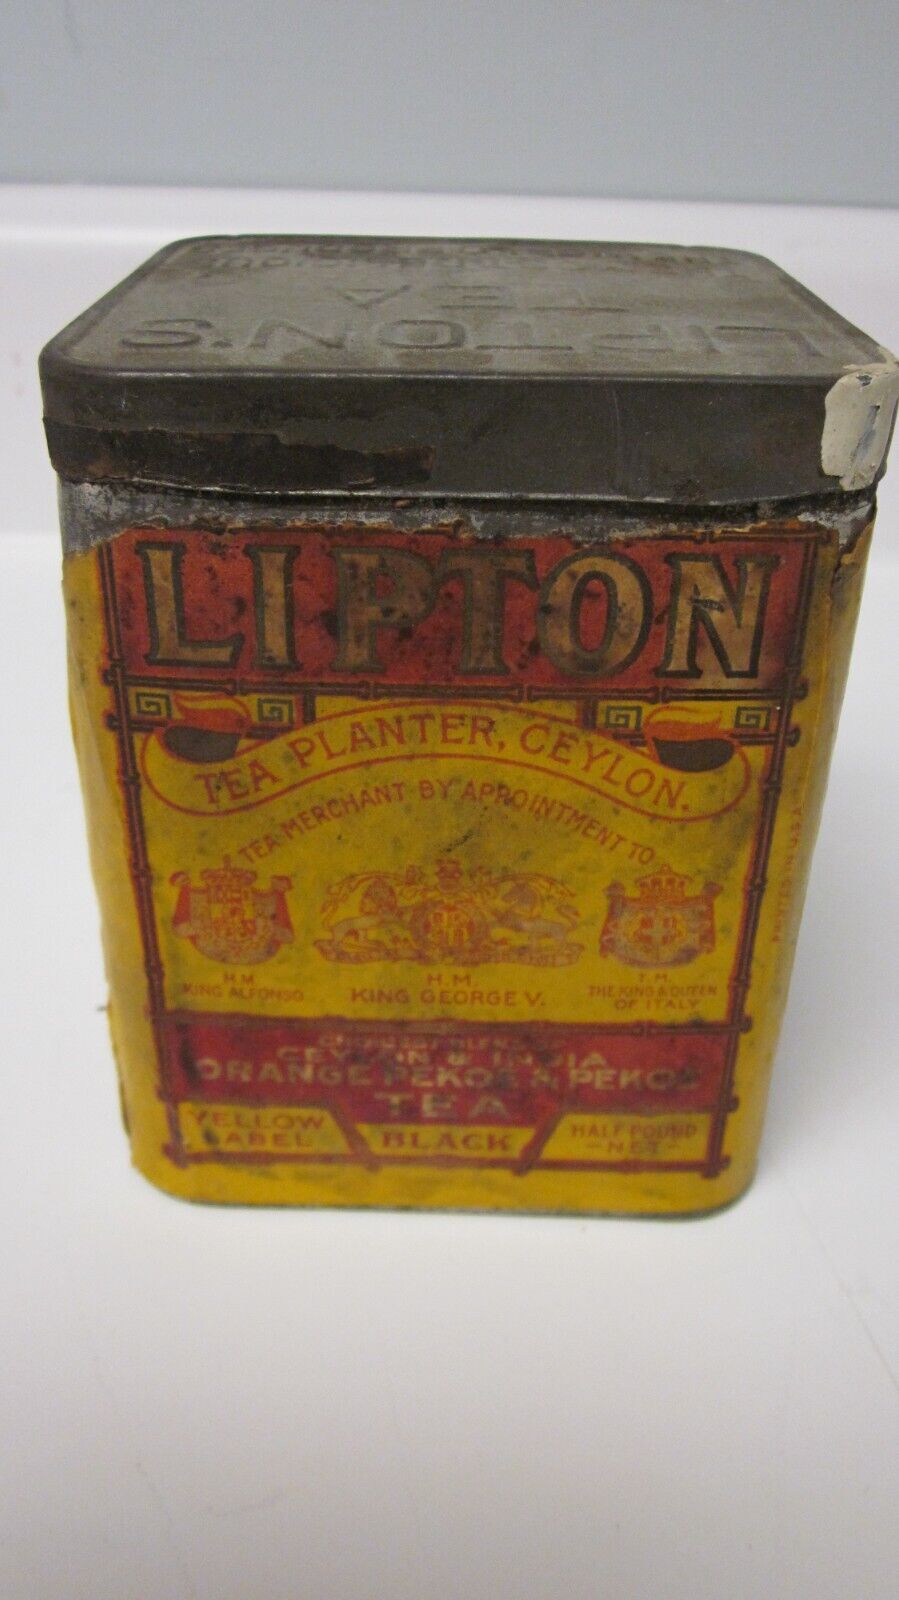 Vintage Lipton Tea Tin, Planter Ceylon, Empty